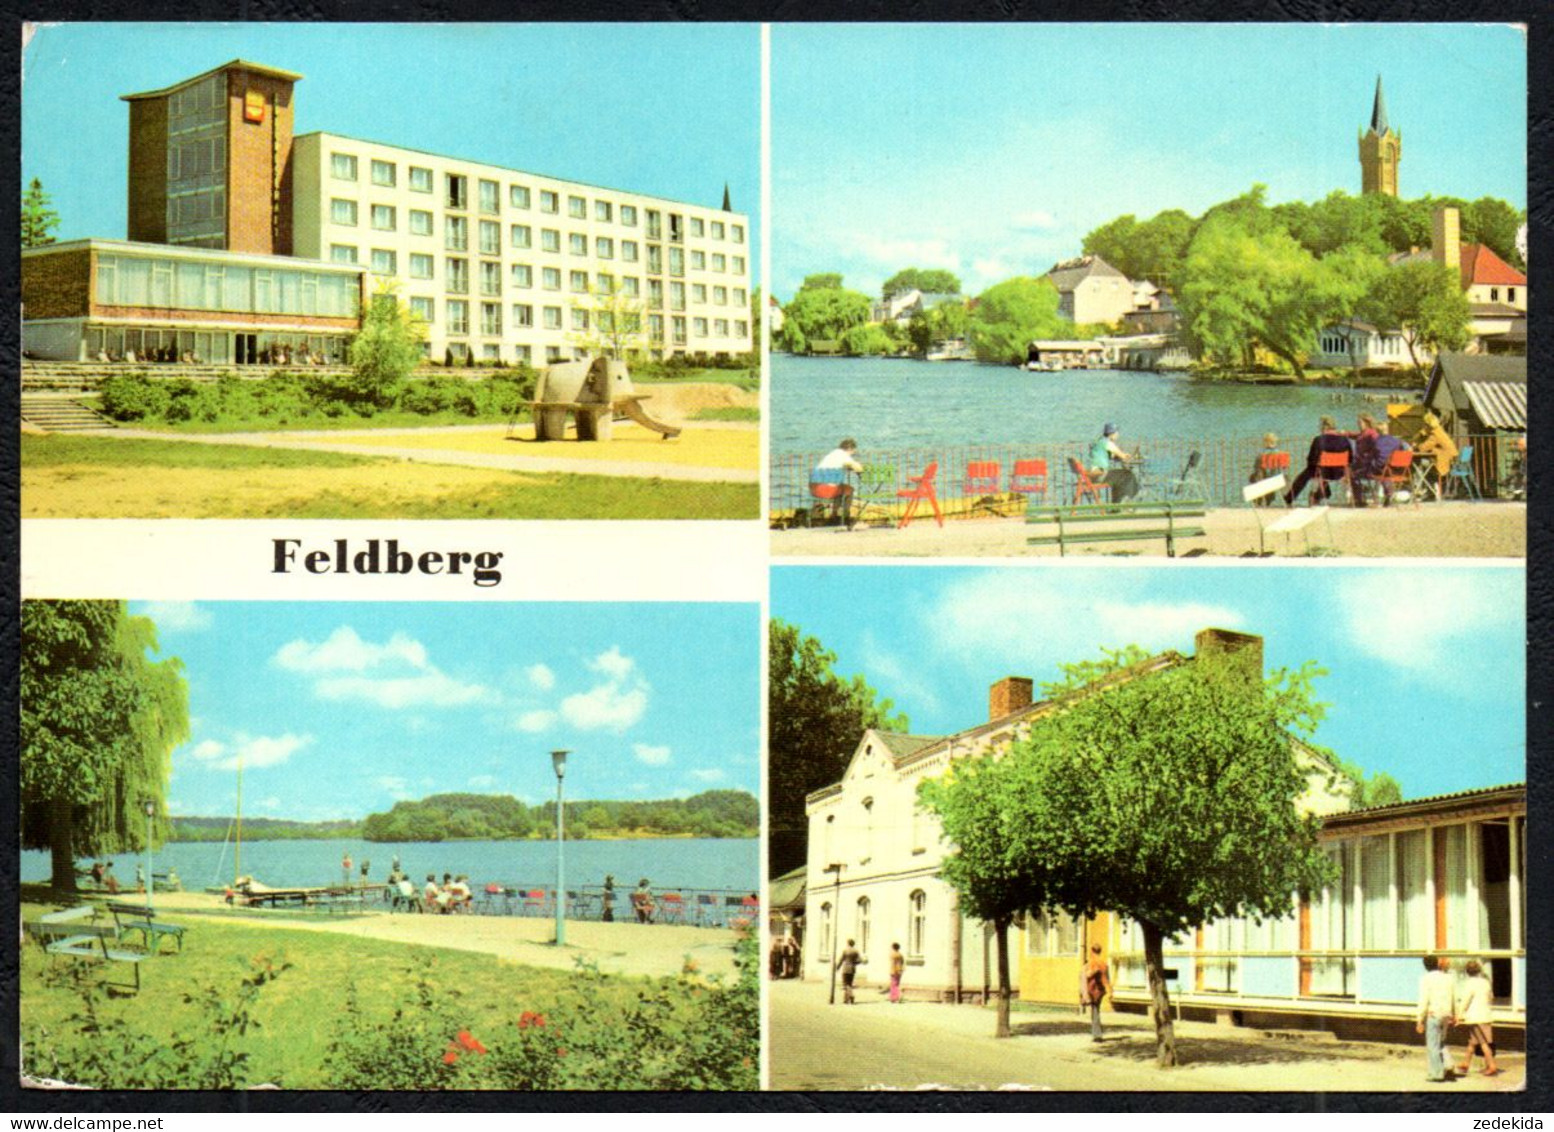 F8113 - Feldberg - FDGB Heim Freundschaft - Bild Und Heimat Reichenbach - Feldberg